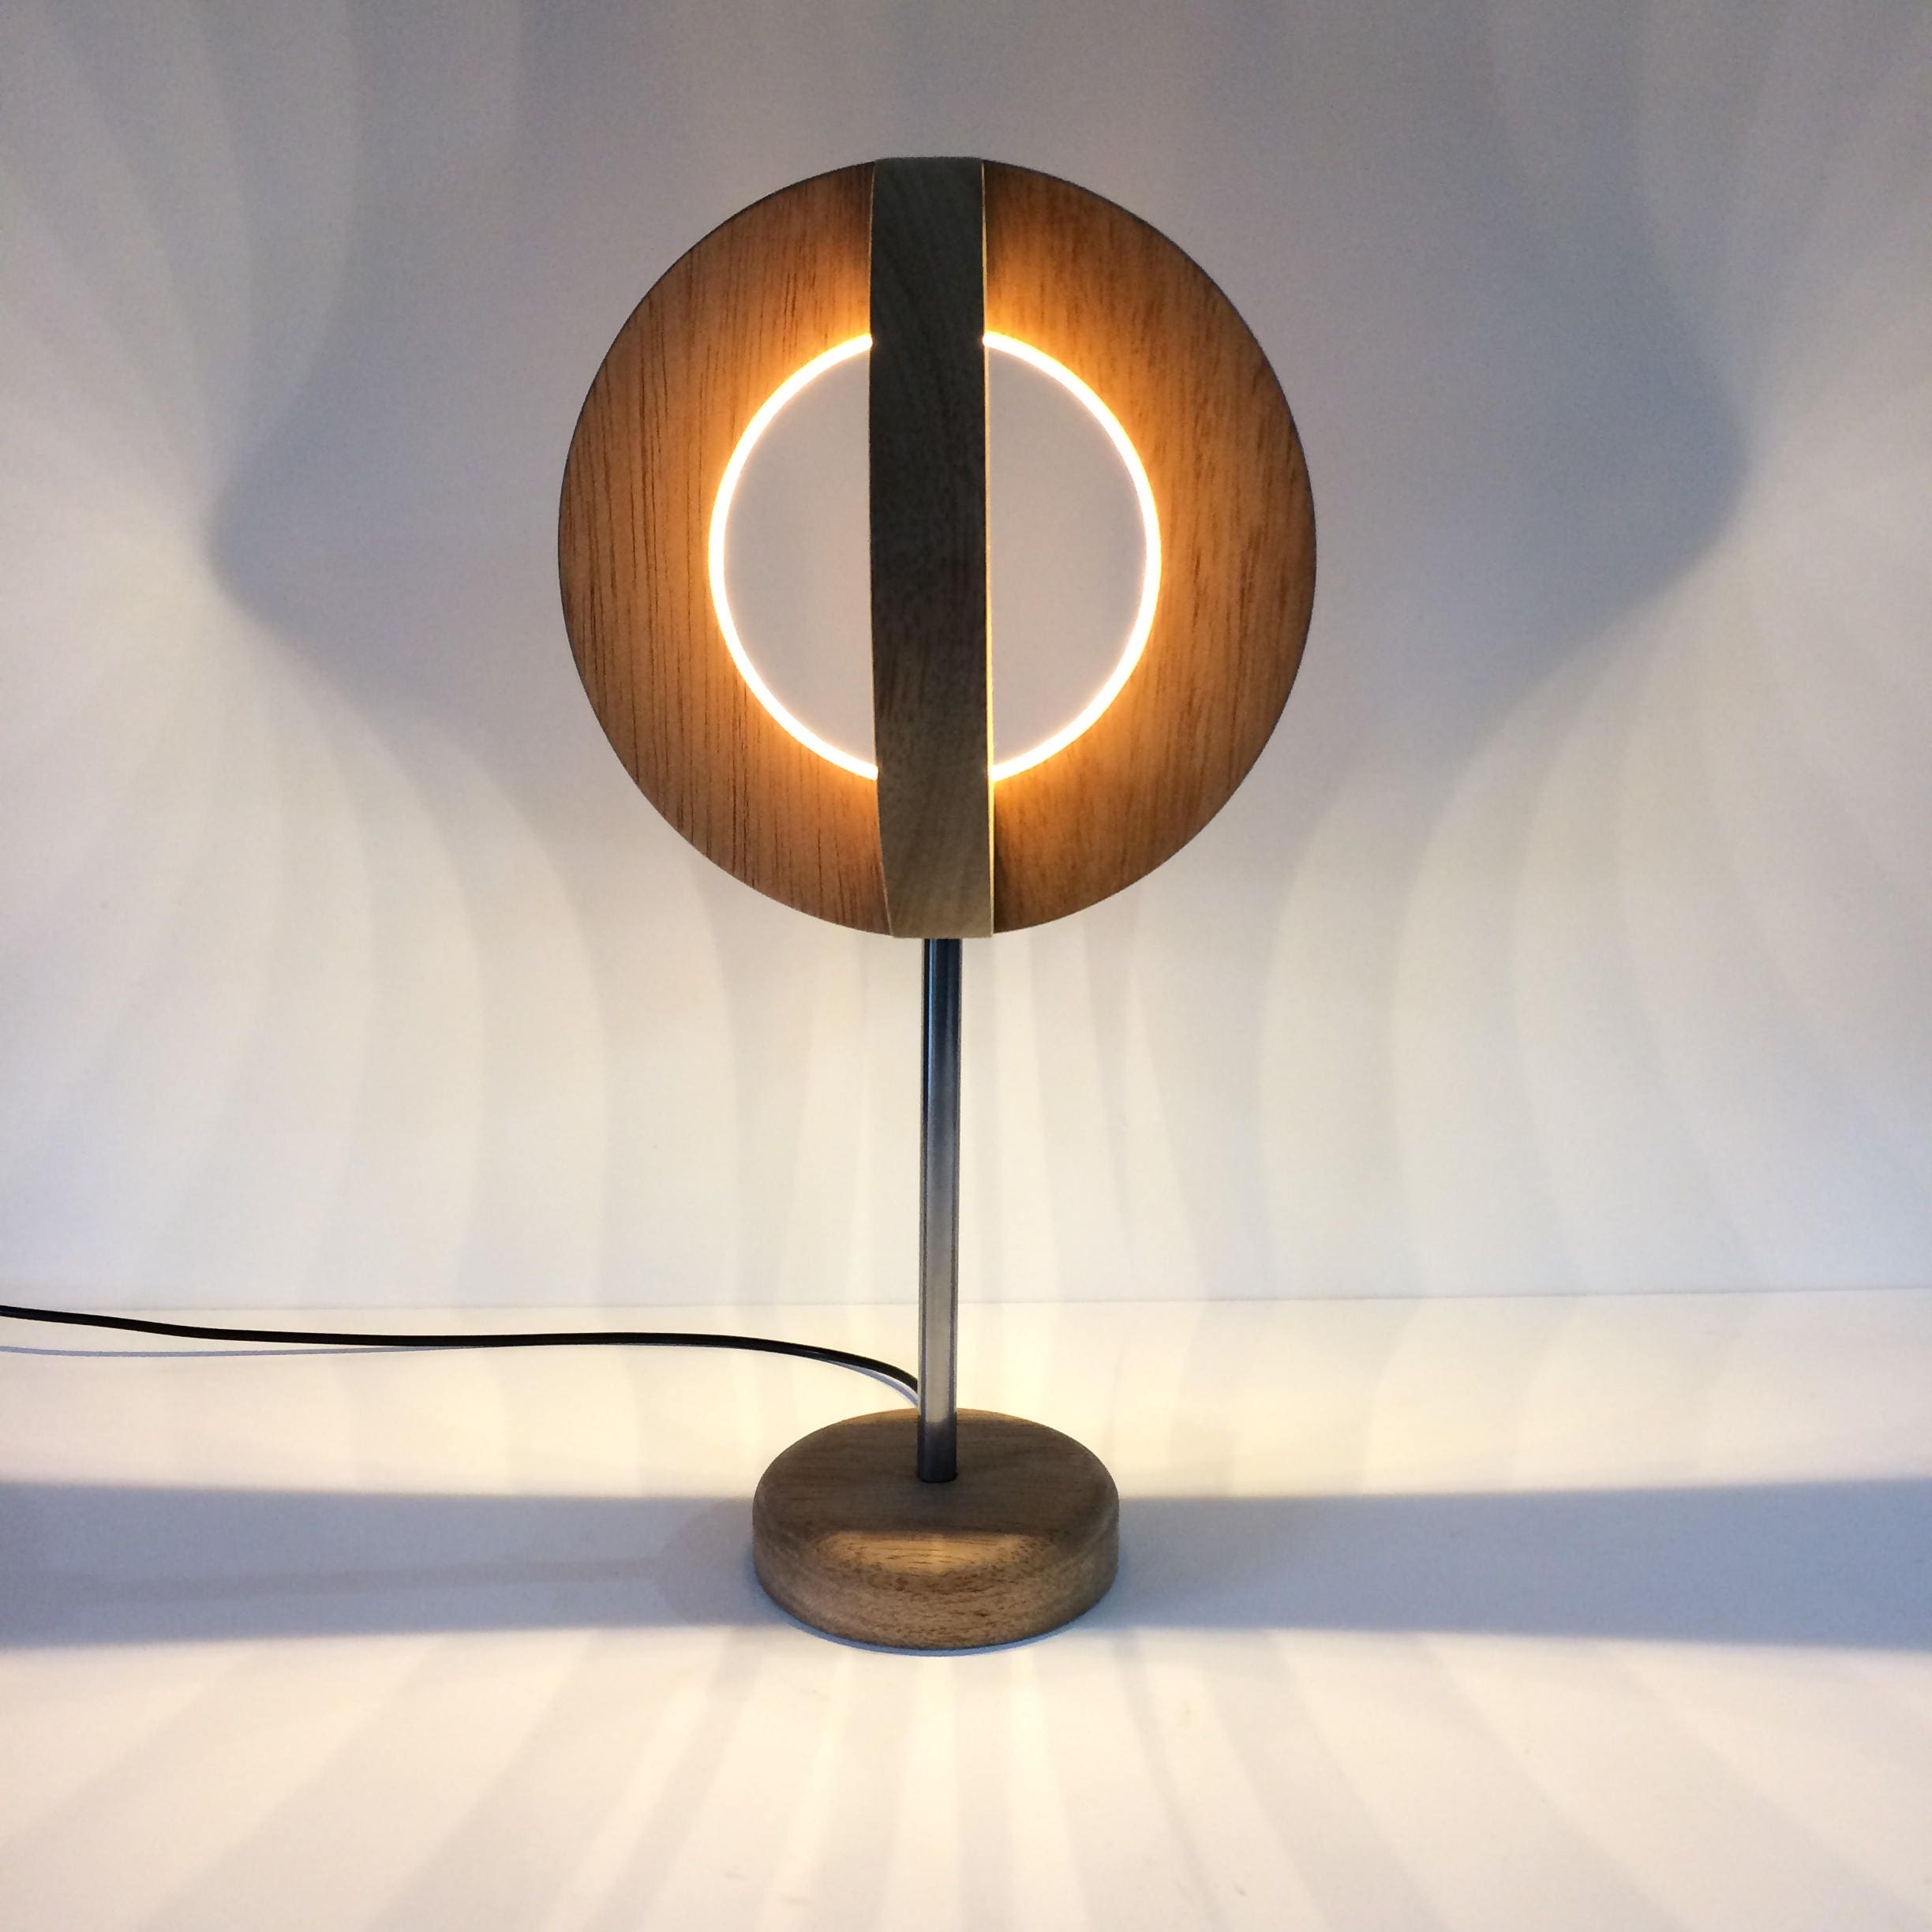 lampe de table en bois led lamp desk modern light round circular wooden sphere minimalist designer lamp